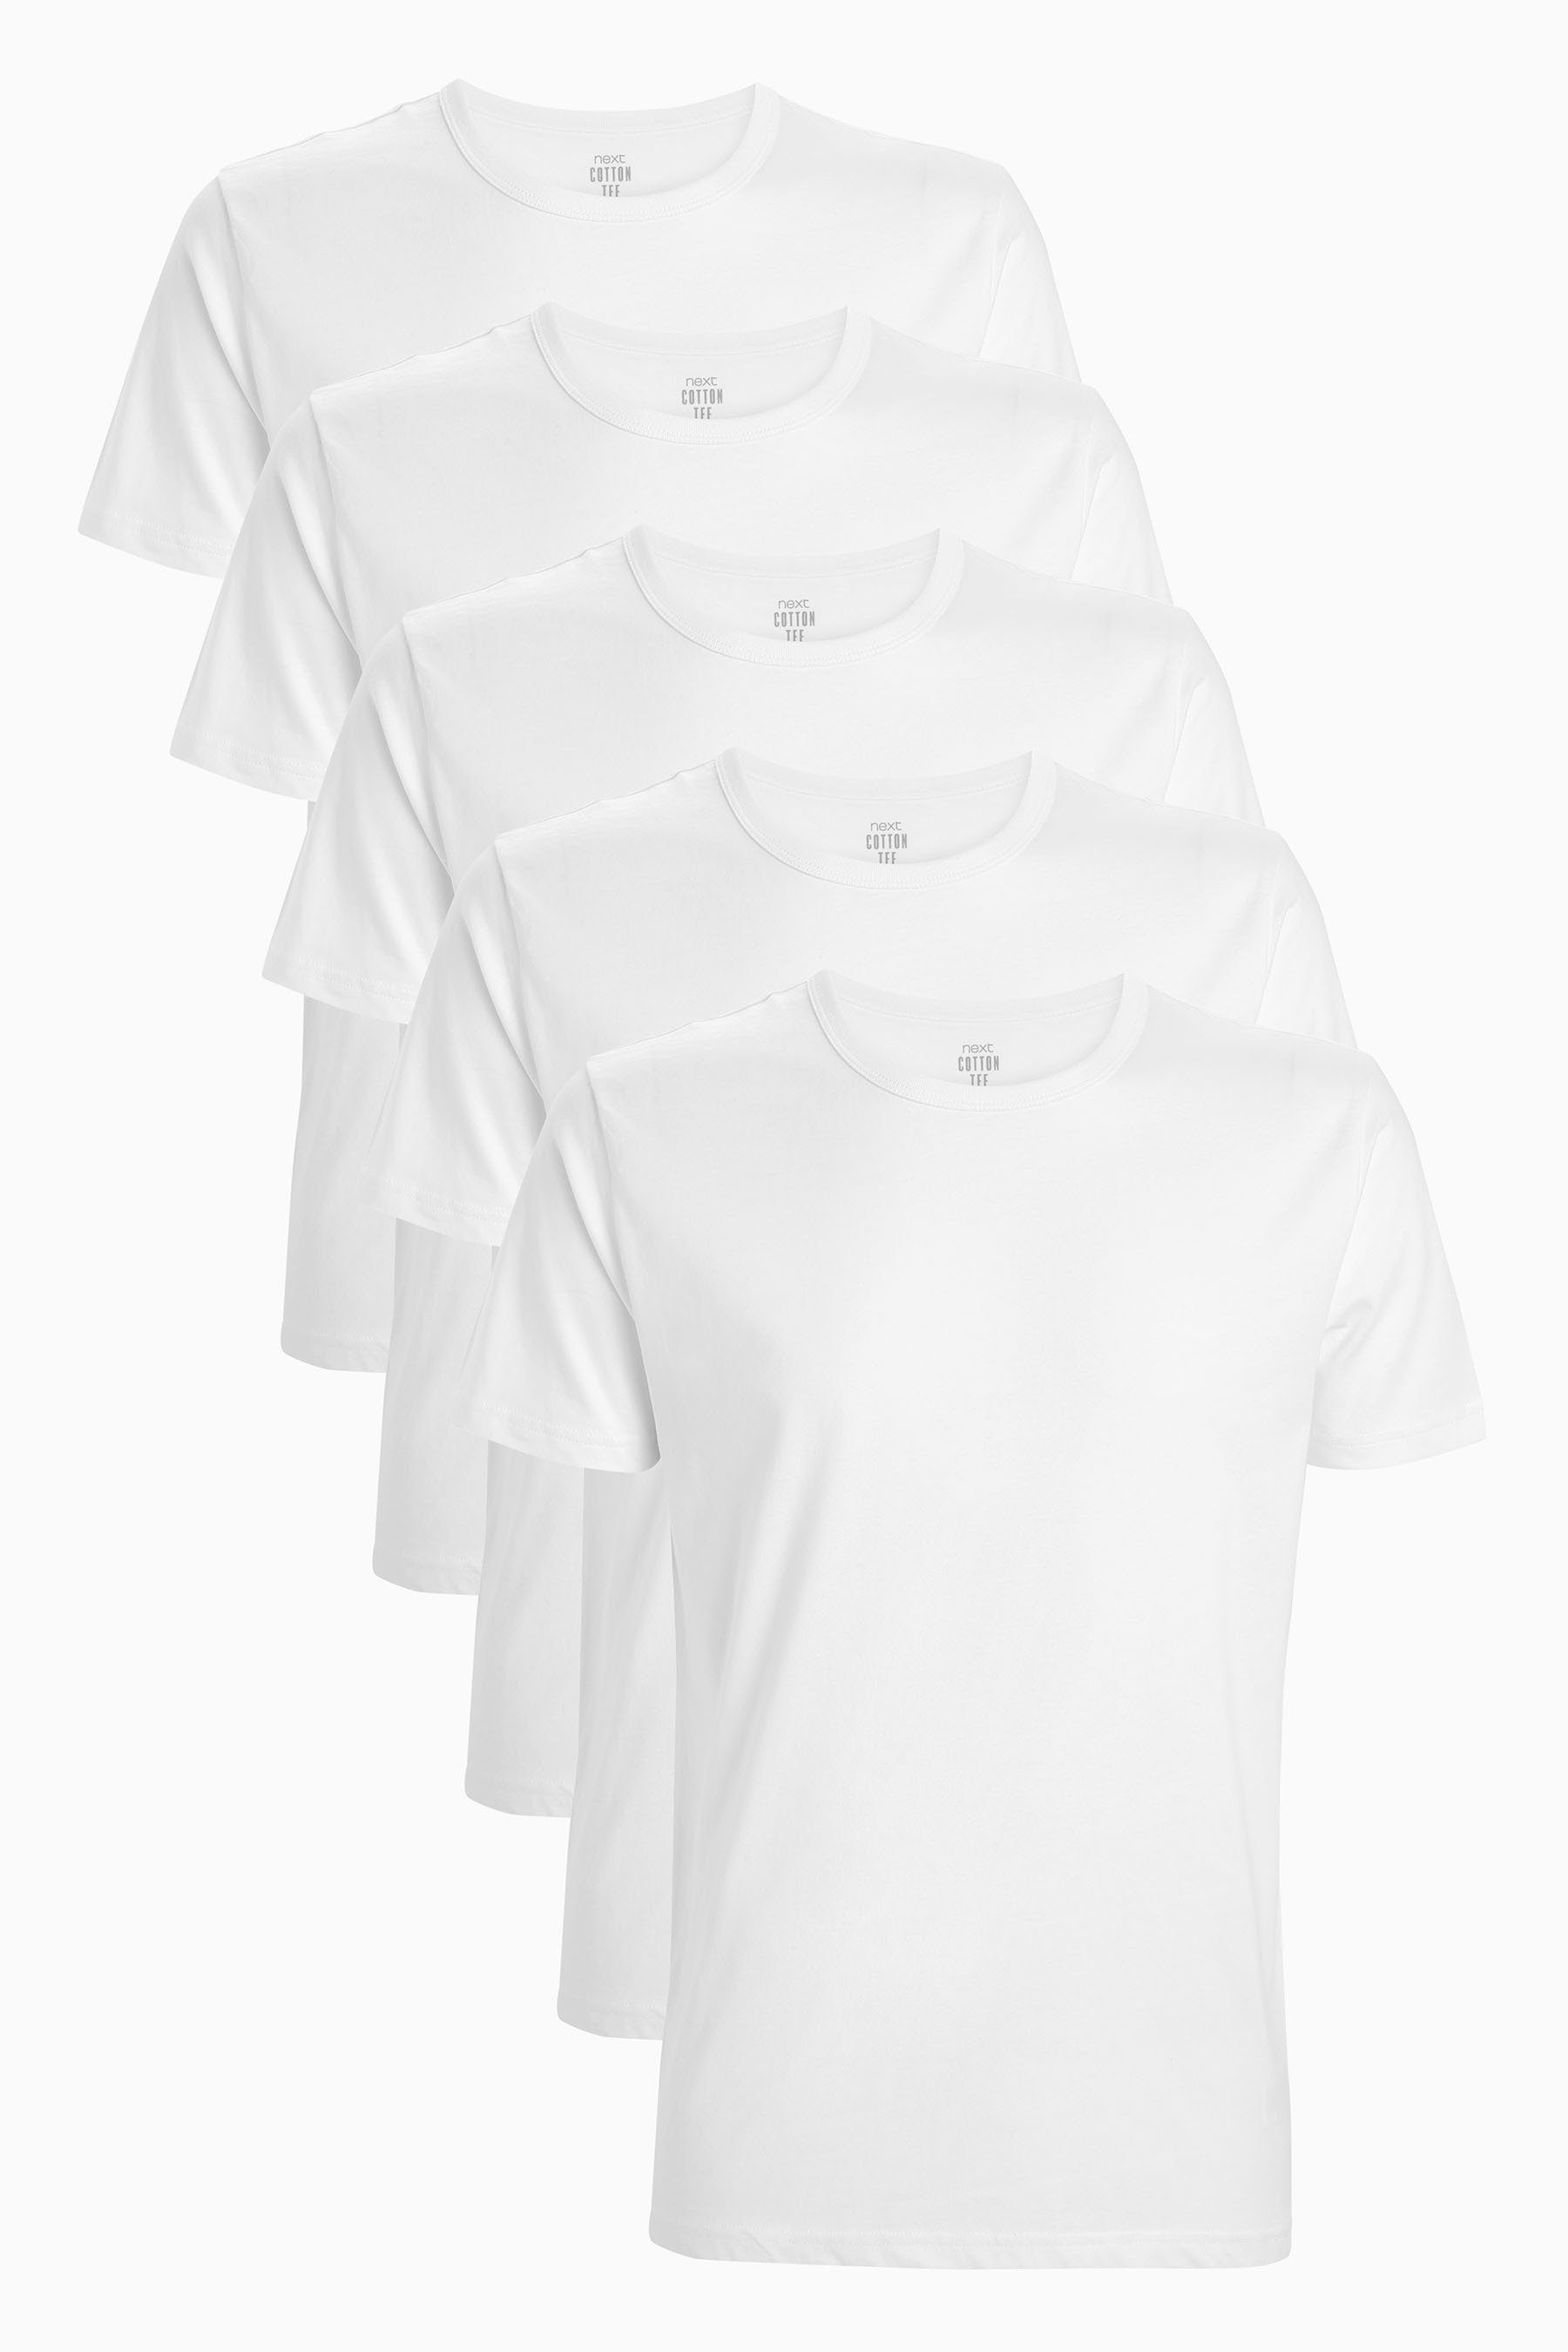 Next Unterhemd (5-St) White